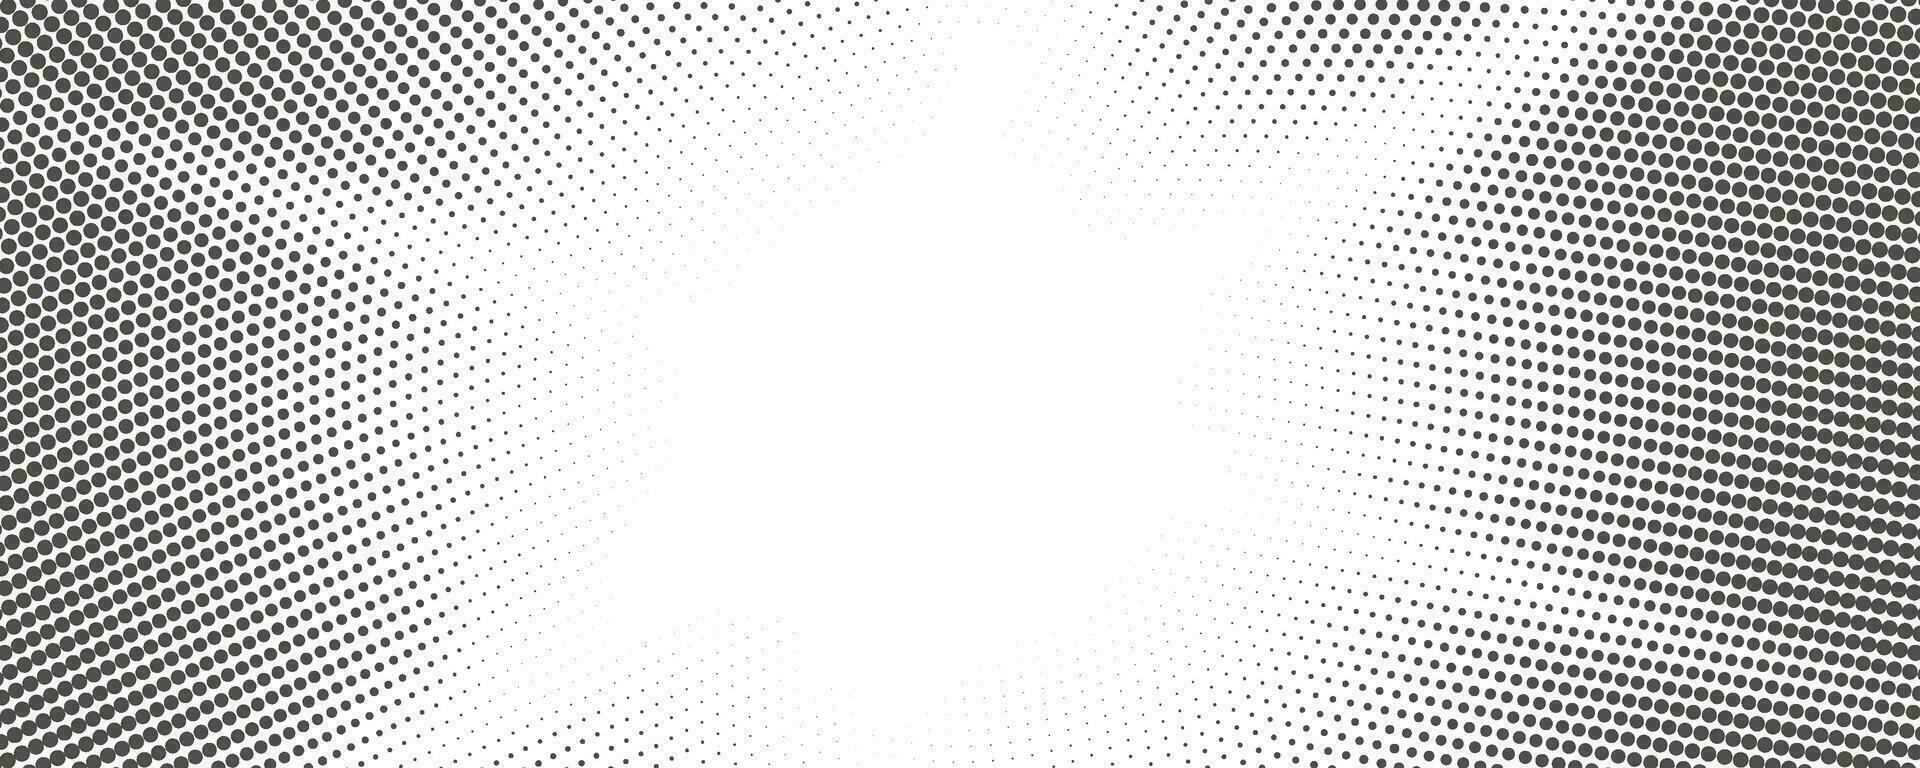 Sonne Strahlen Halbton Hintergrund. Weiß und grau radial abstrakt Comic Muster. Vektor Explosion abstrakt Manga Hintergrund